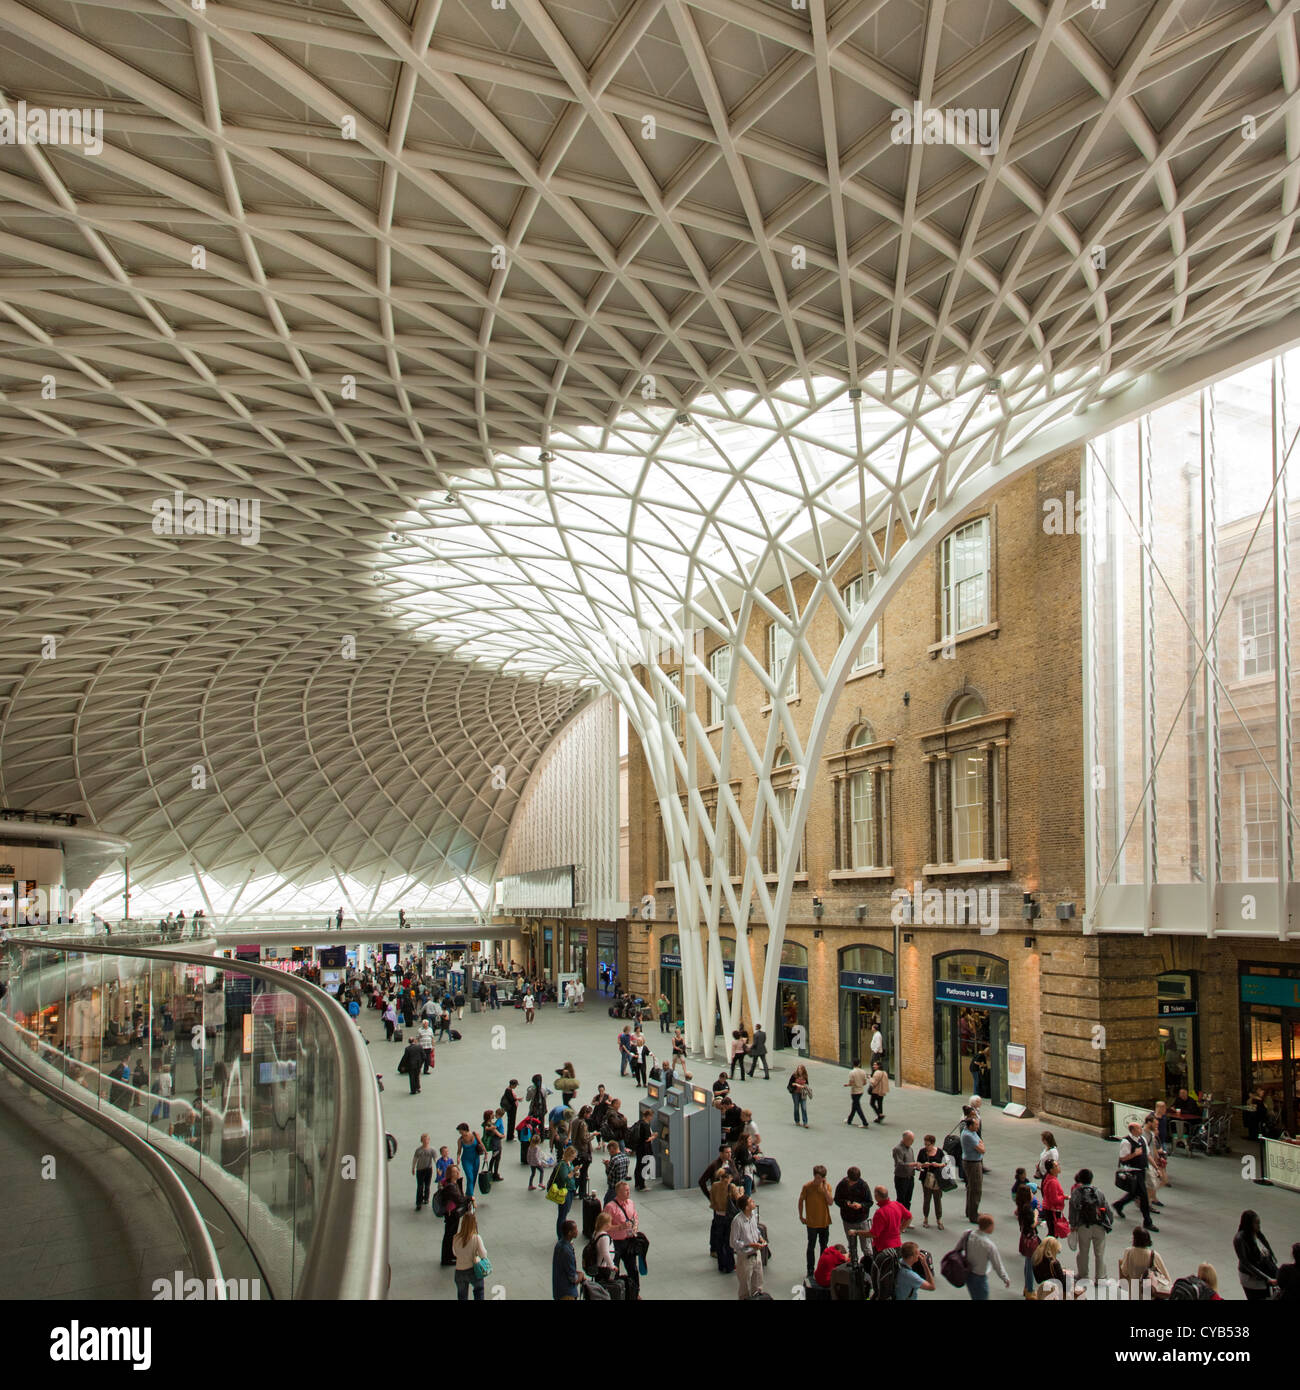 La gare de Kings Cross nouveau hall de l'architecture, Londres, Angleterre Banque D'Images